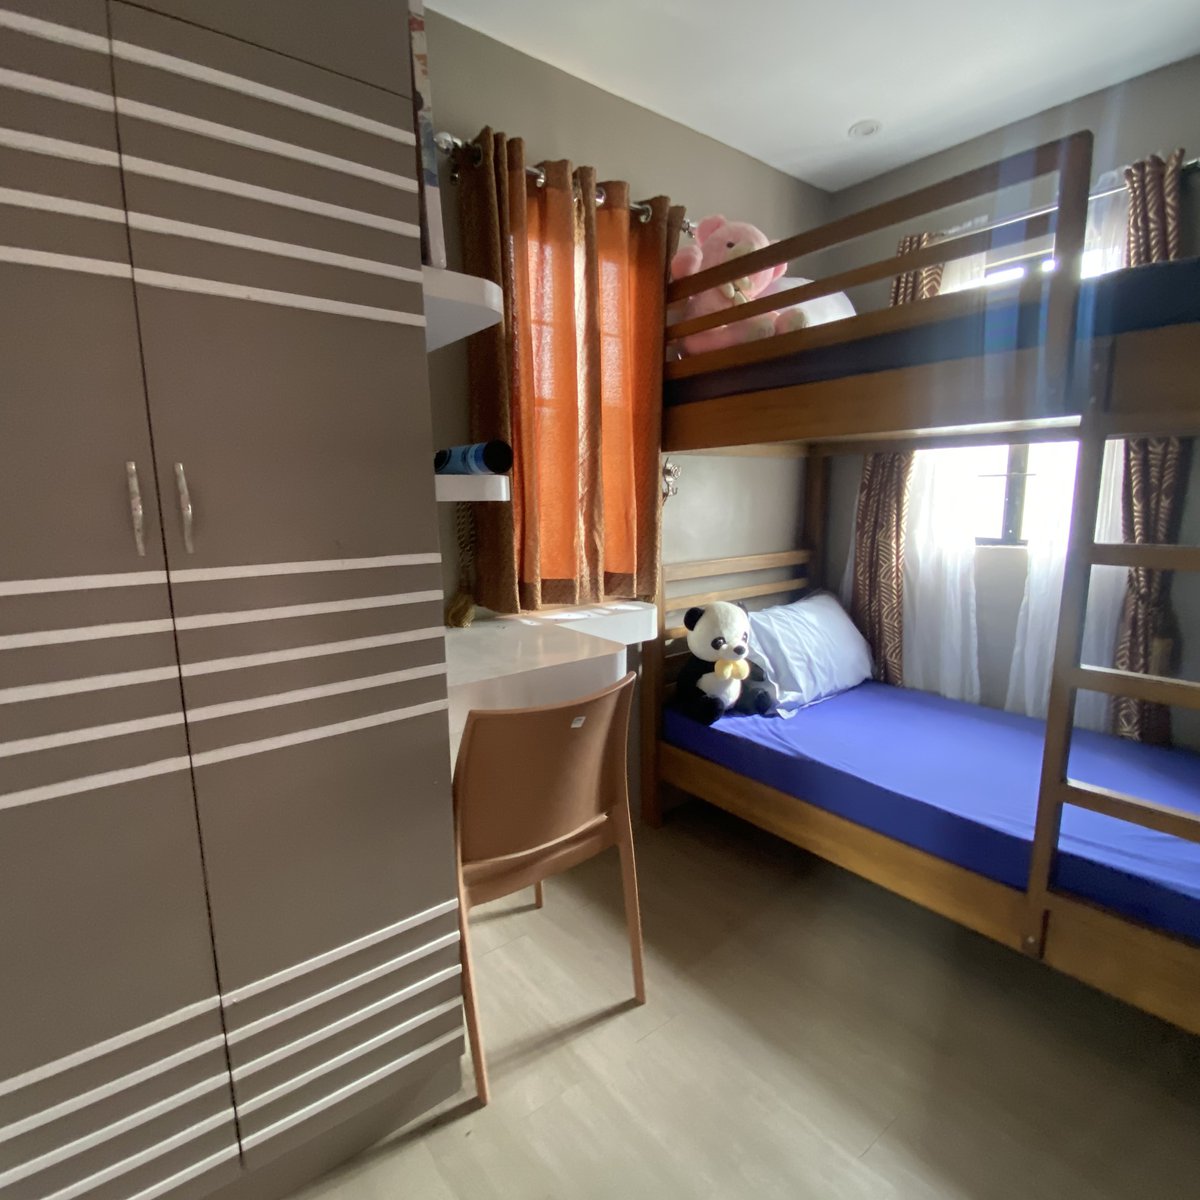 3-bedroom single detached house for sale in sorsogon city sorsogon